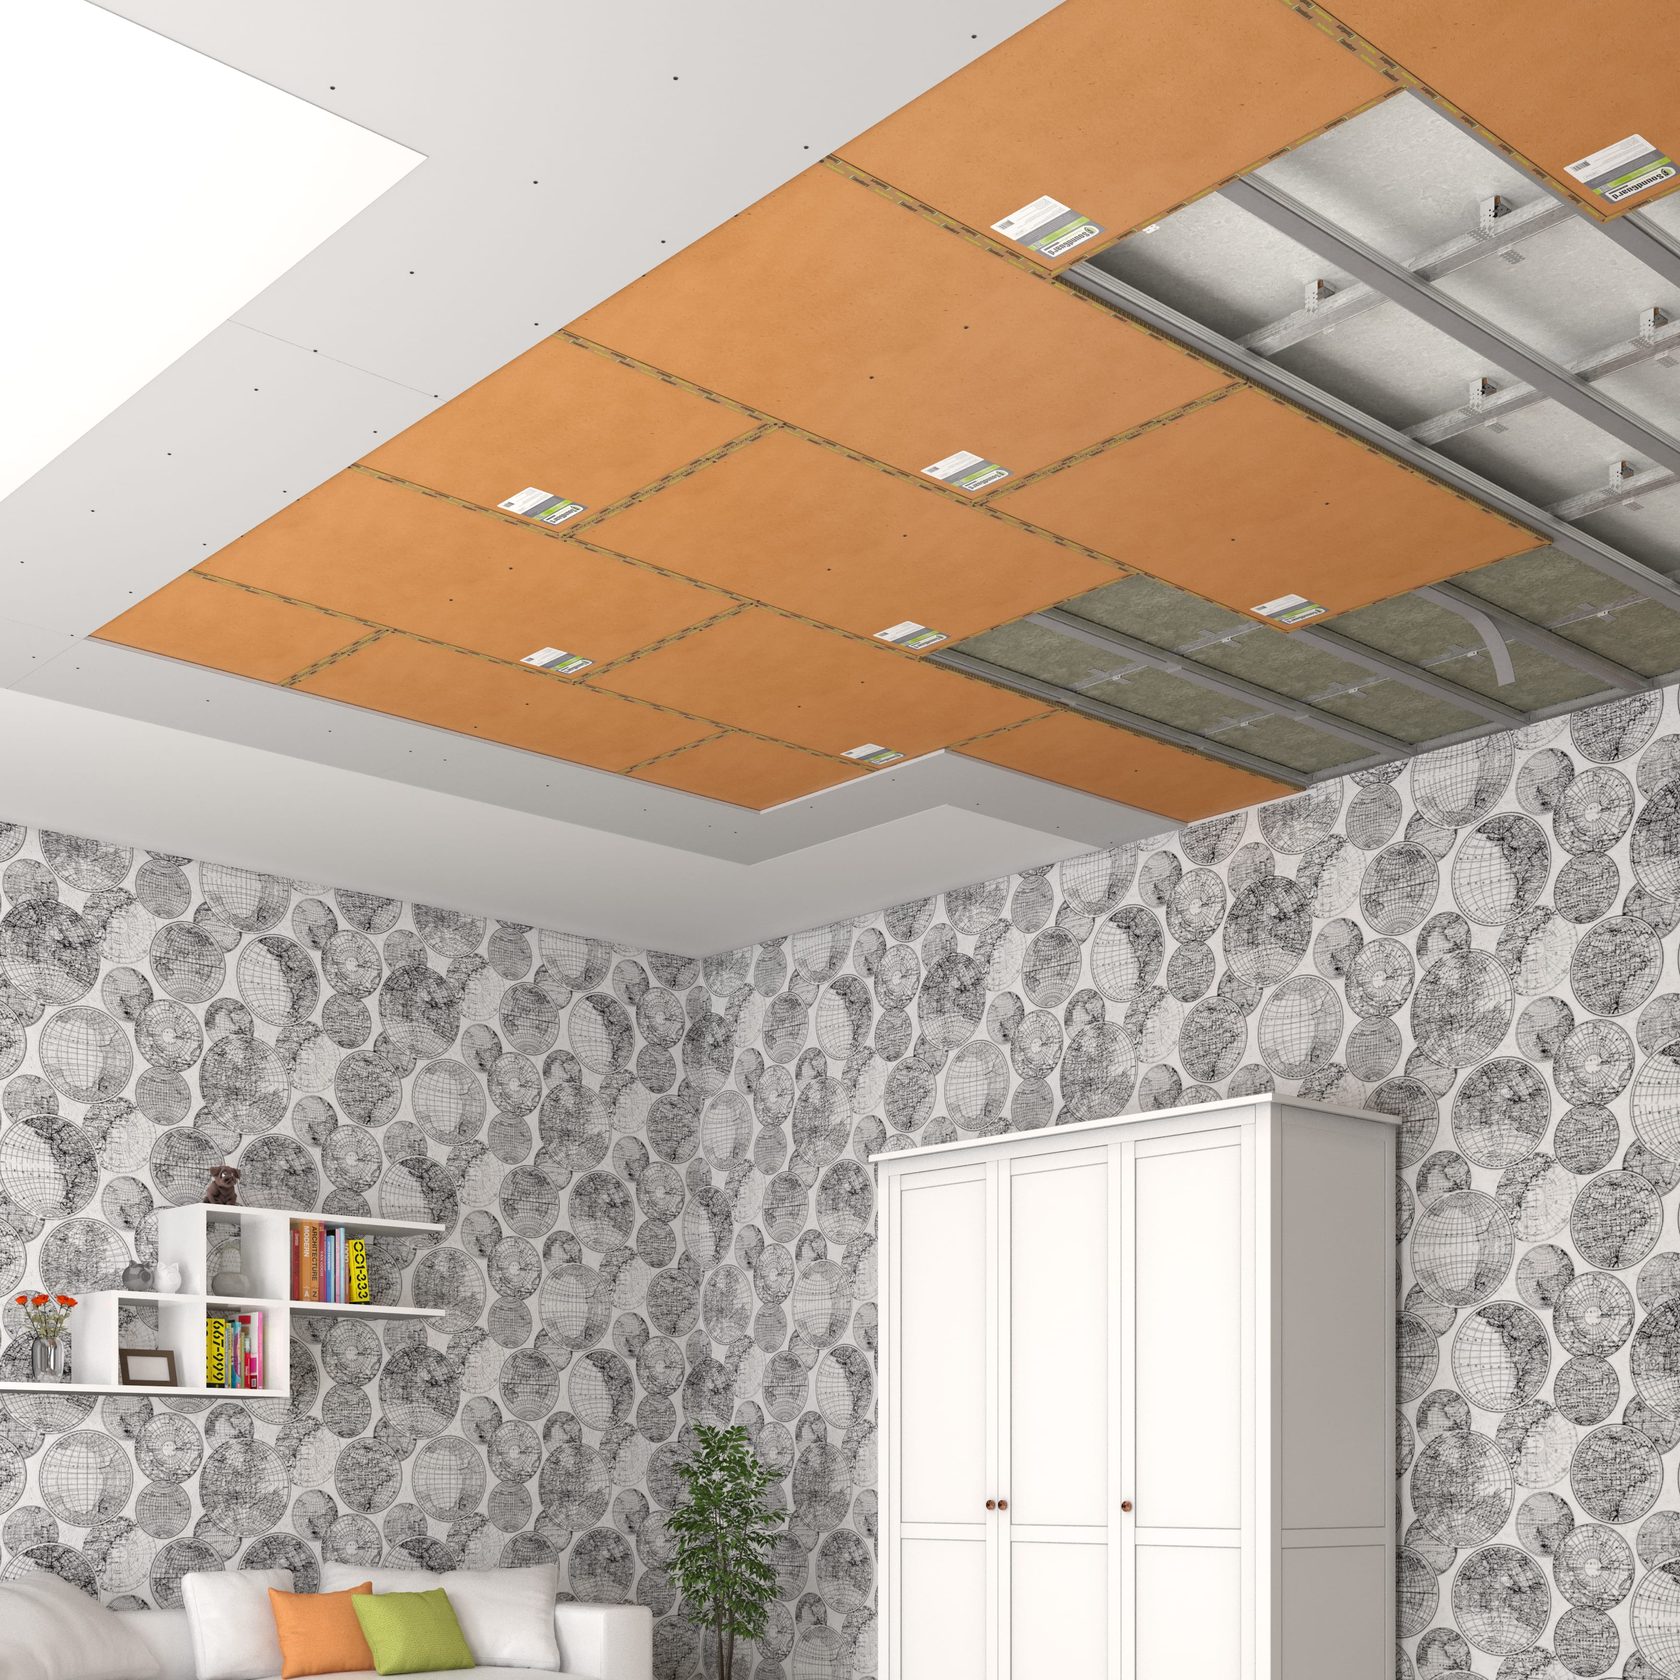 Звукоизоляция потолка отзывы. Звукоизоляционные материалы для потолка. Шумоизоляция потолка. Шумоизоляционные материалы для потолка. Звукоизоляционные панели для потолка.